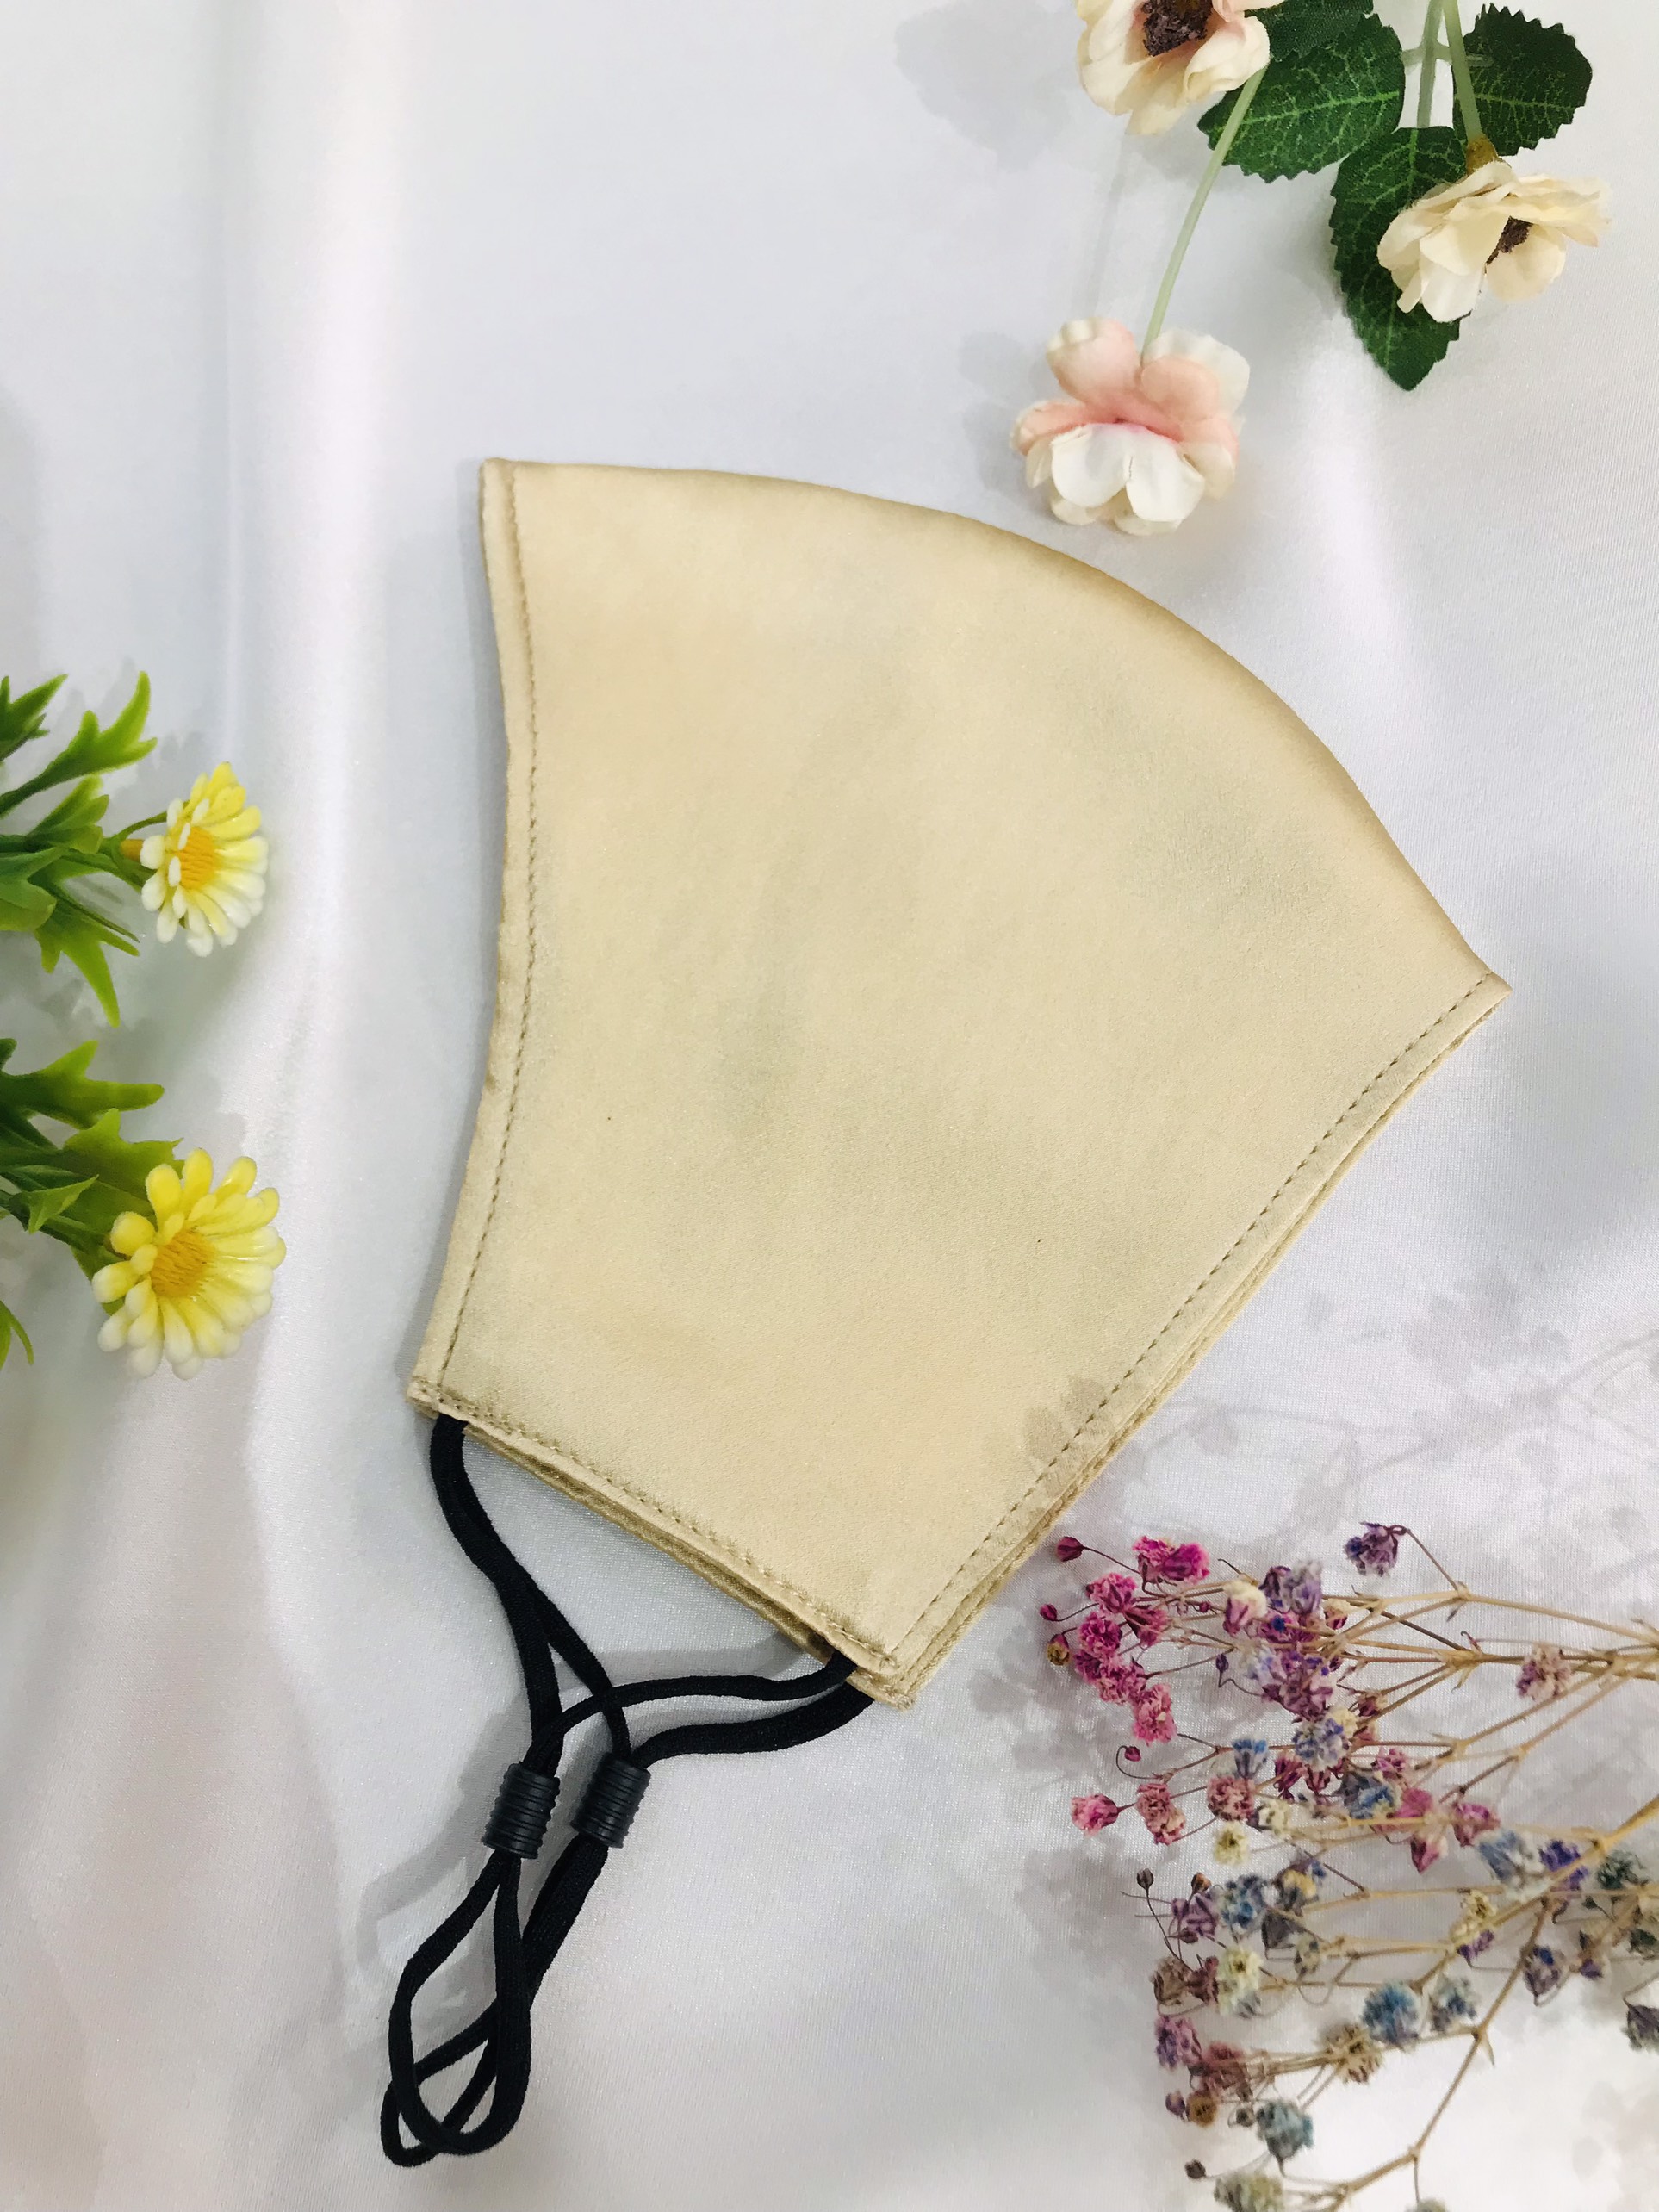 Mulberry silk facemask- Khẩu trang lụa tơ tằm tự nhiên 3 lớp unisex, gồm 2 lớp vải lụa tơ tằm (silk)+ 01 lớp bông tơ tằm